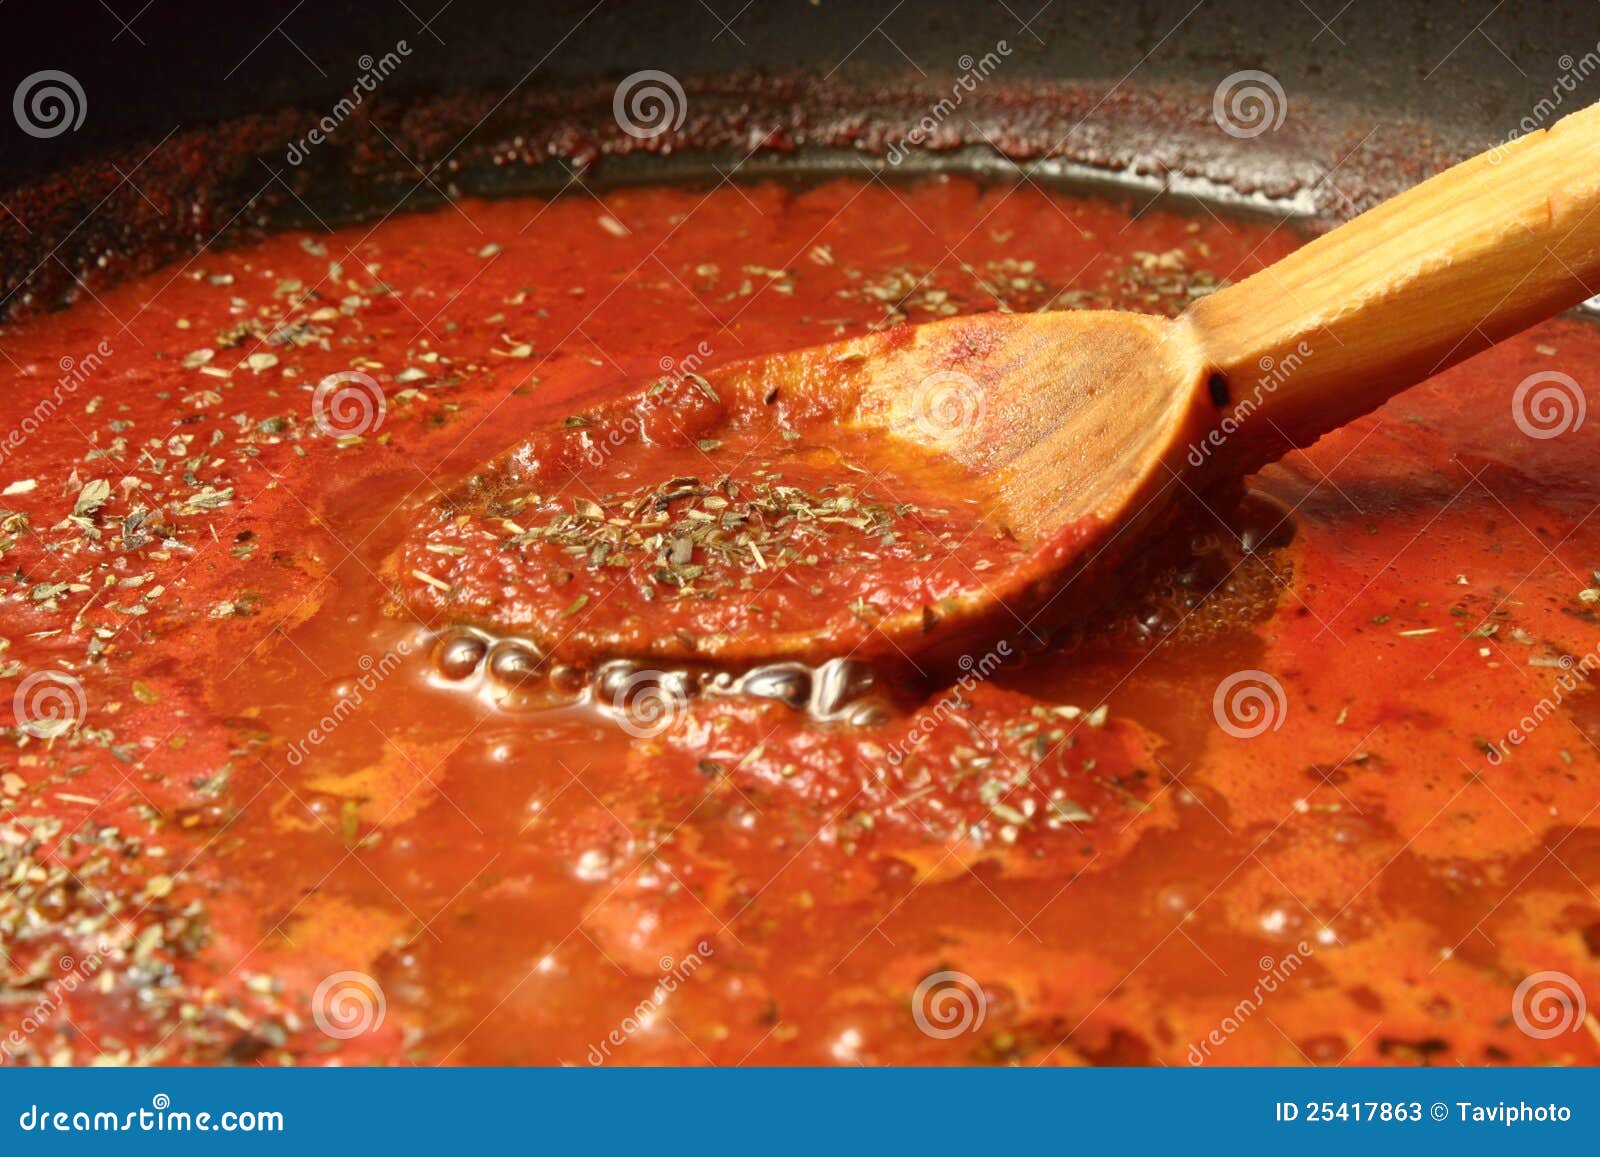 томатный соус для пиццы рецепт с фото пошагово фото 12